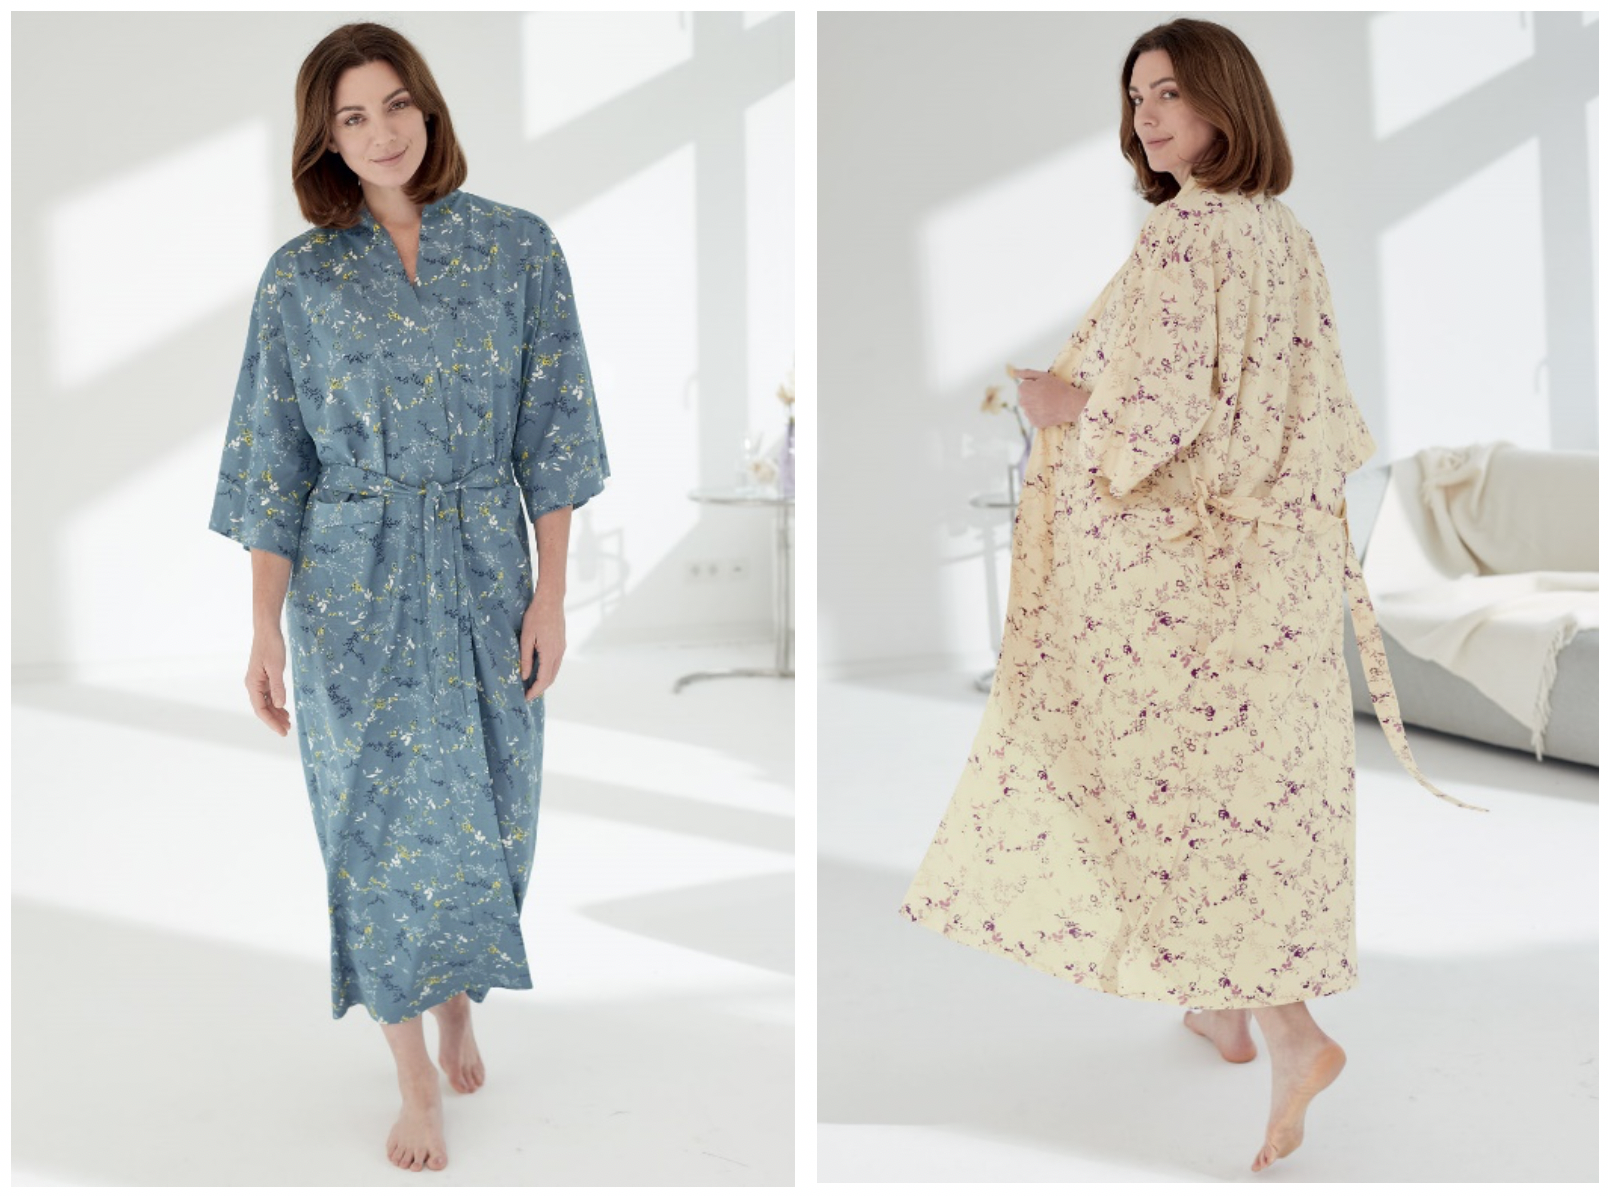 Patra's modern take on the Kimono